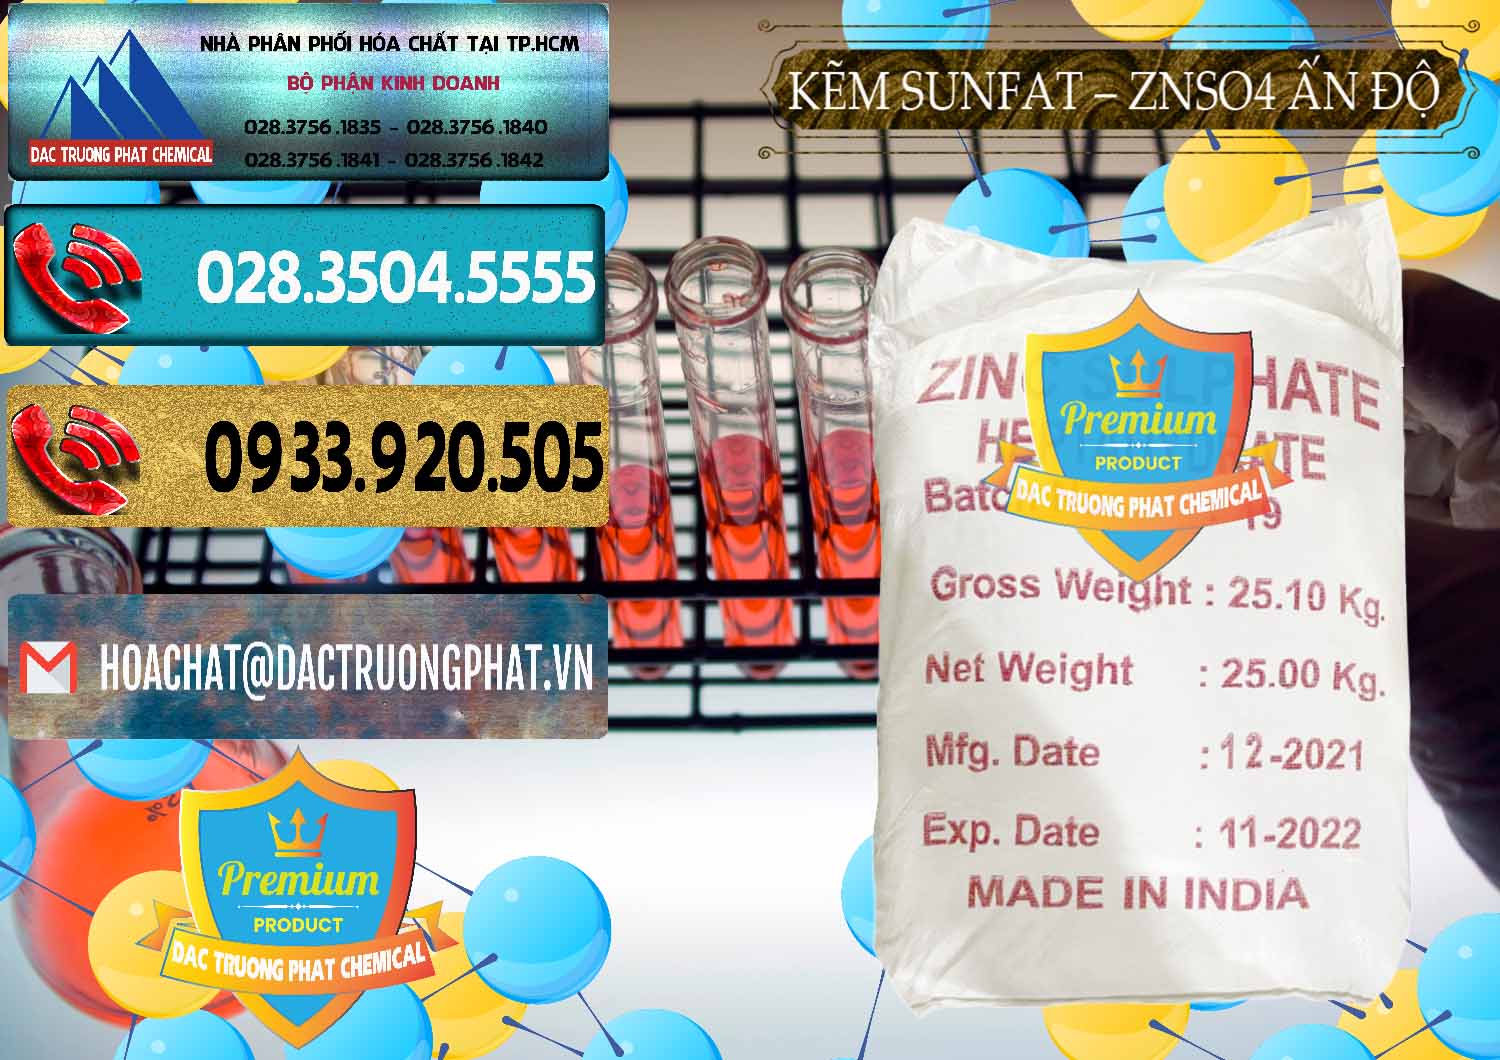 Bán & phân phối Kẽm Sunfat – ZNSO4.7H2O Ấn Độ India - 0417 - Chuyên cung cấp ( kinh doanh ) hóa chất tại TP.HCM - hoachatdetnhuom.com